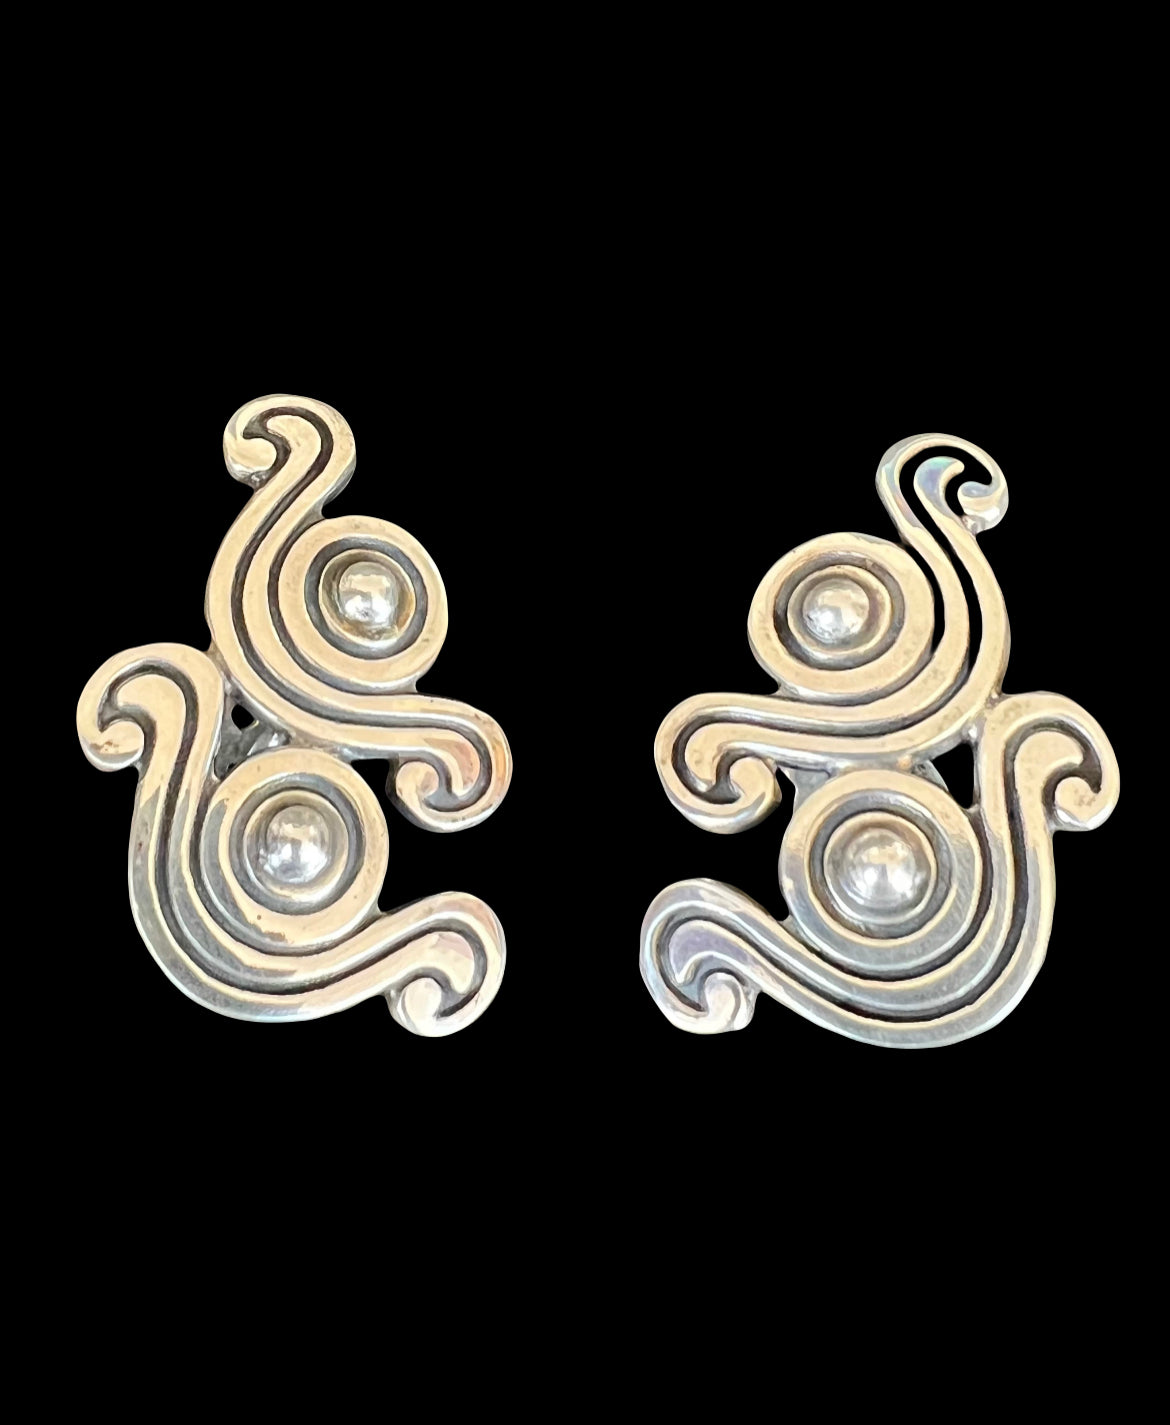 Bernice Goodspeed Taxco Mexico Sterling Silver Double Swirl Earrings 31g